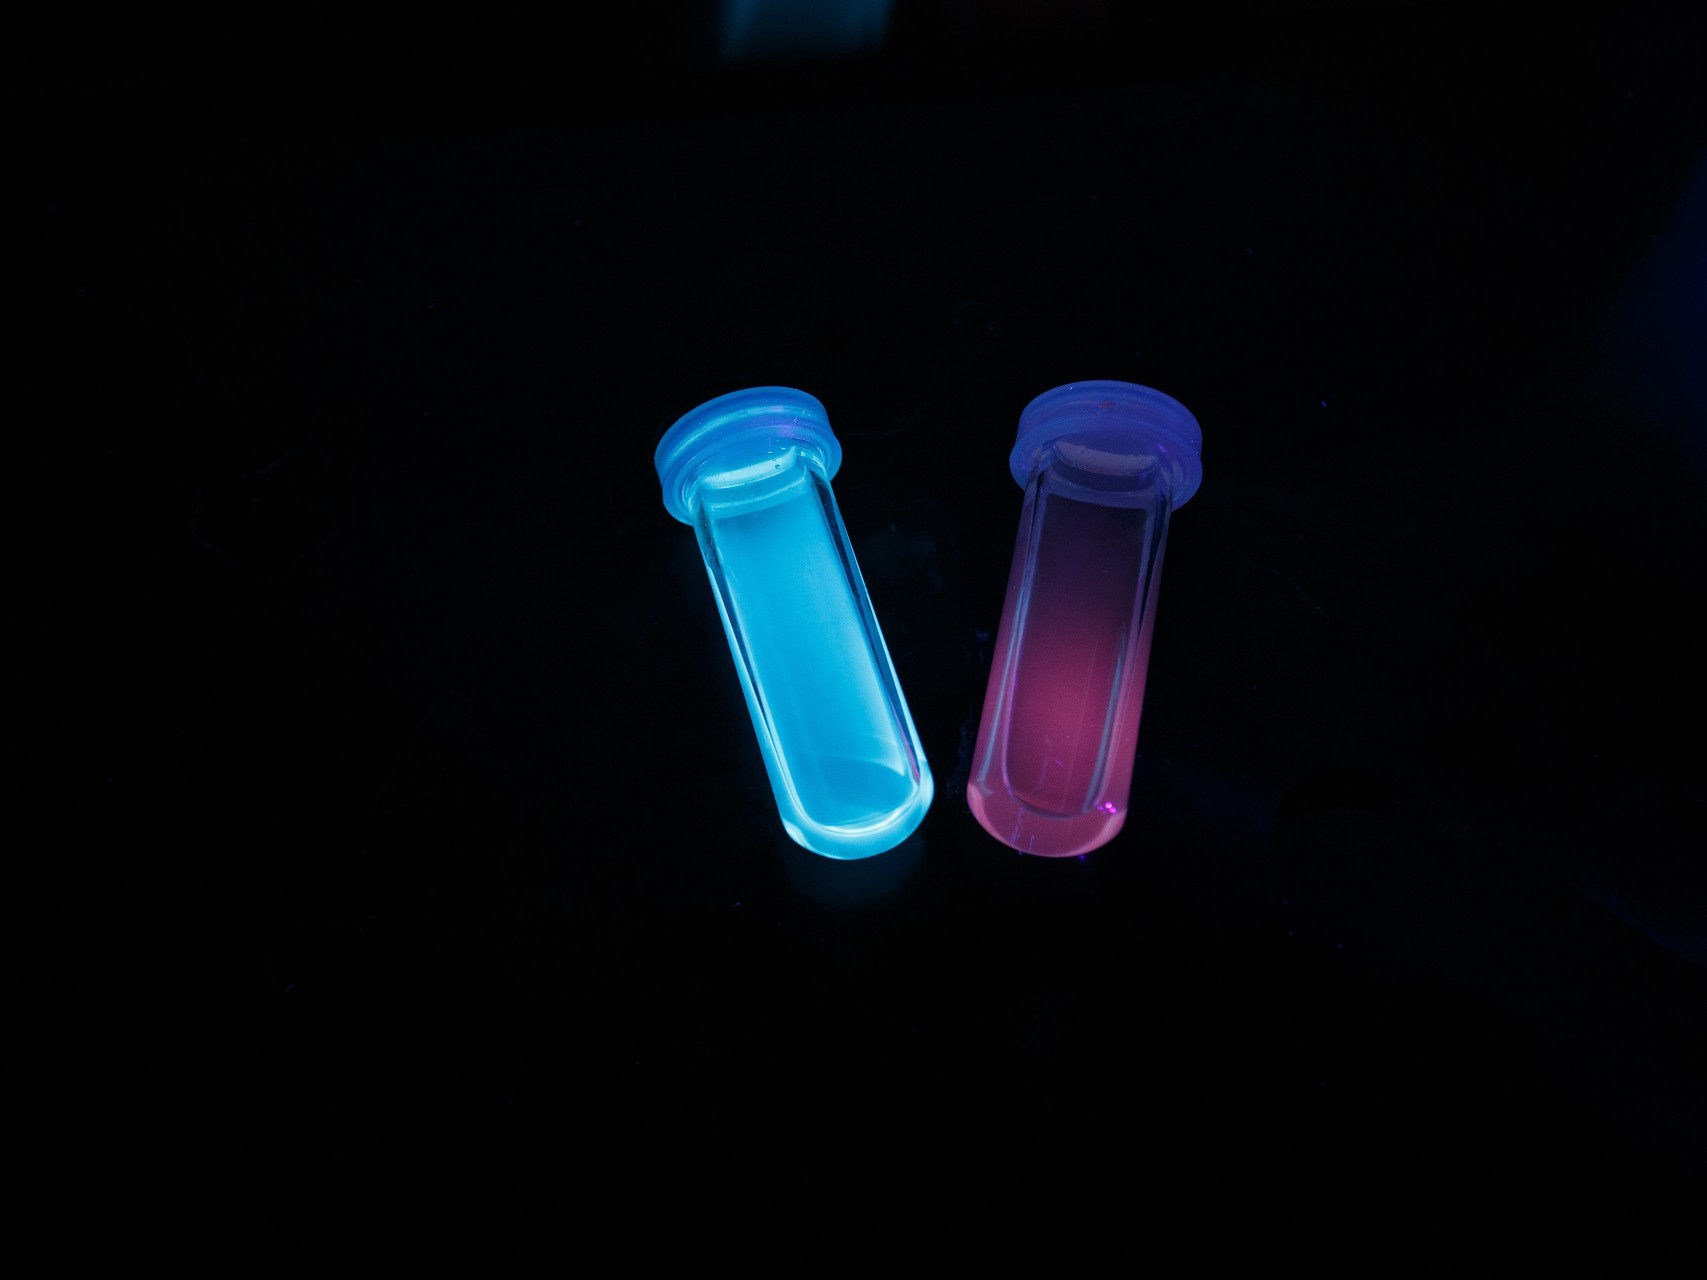 des points de carbone fluorescents réagissent à la présence de glyphosate dans un petit flacon